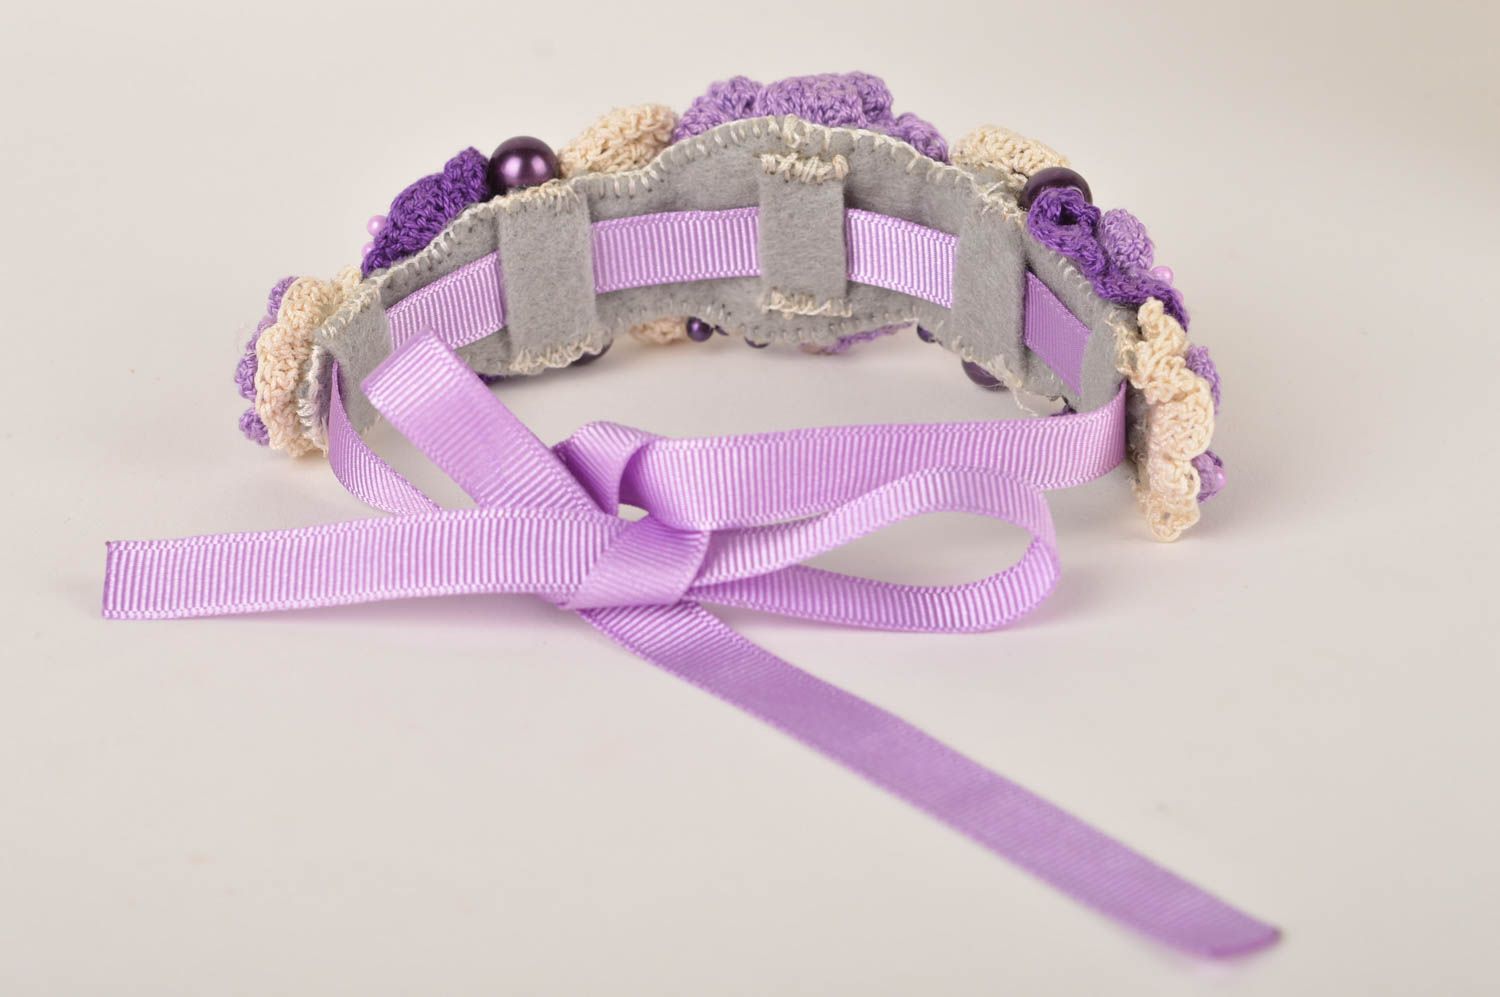 Unusual handmade wrist bracelet designs flower bracelet crochet ideas gift ideas photo 5